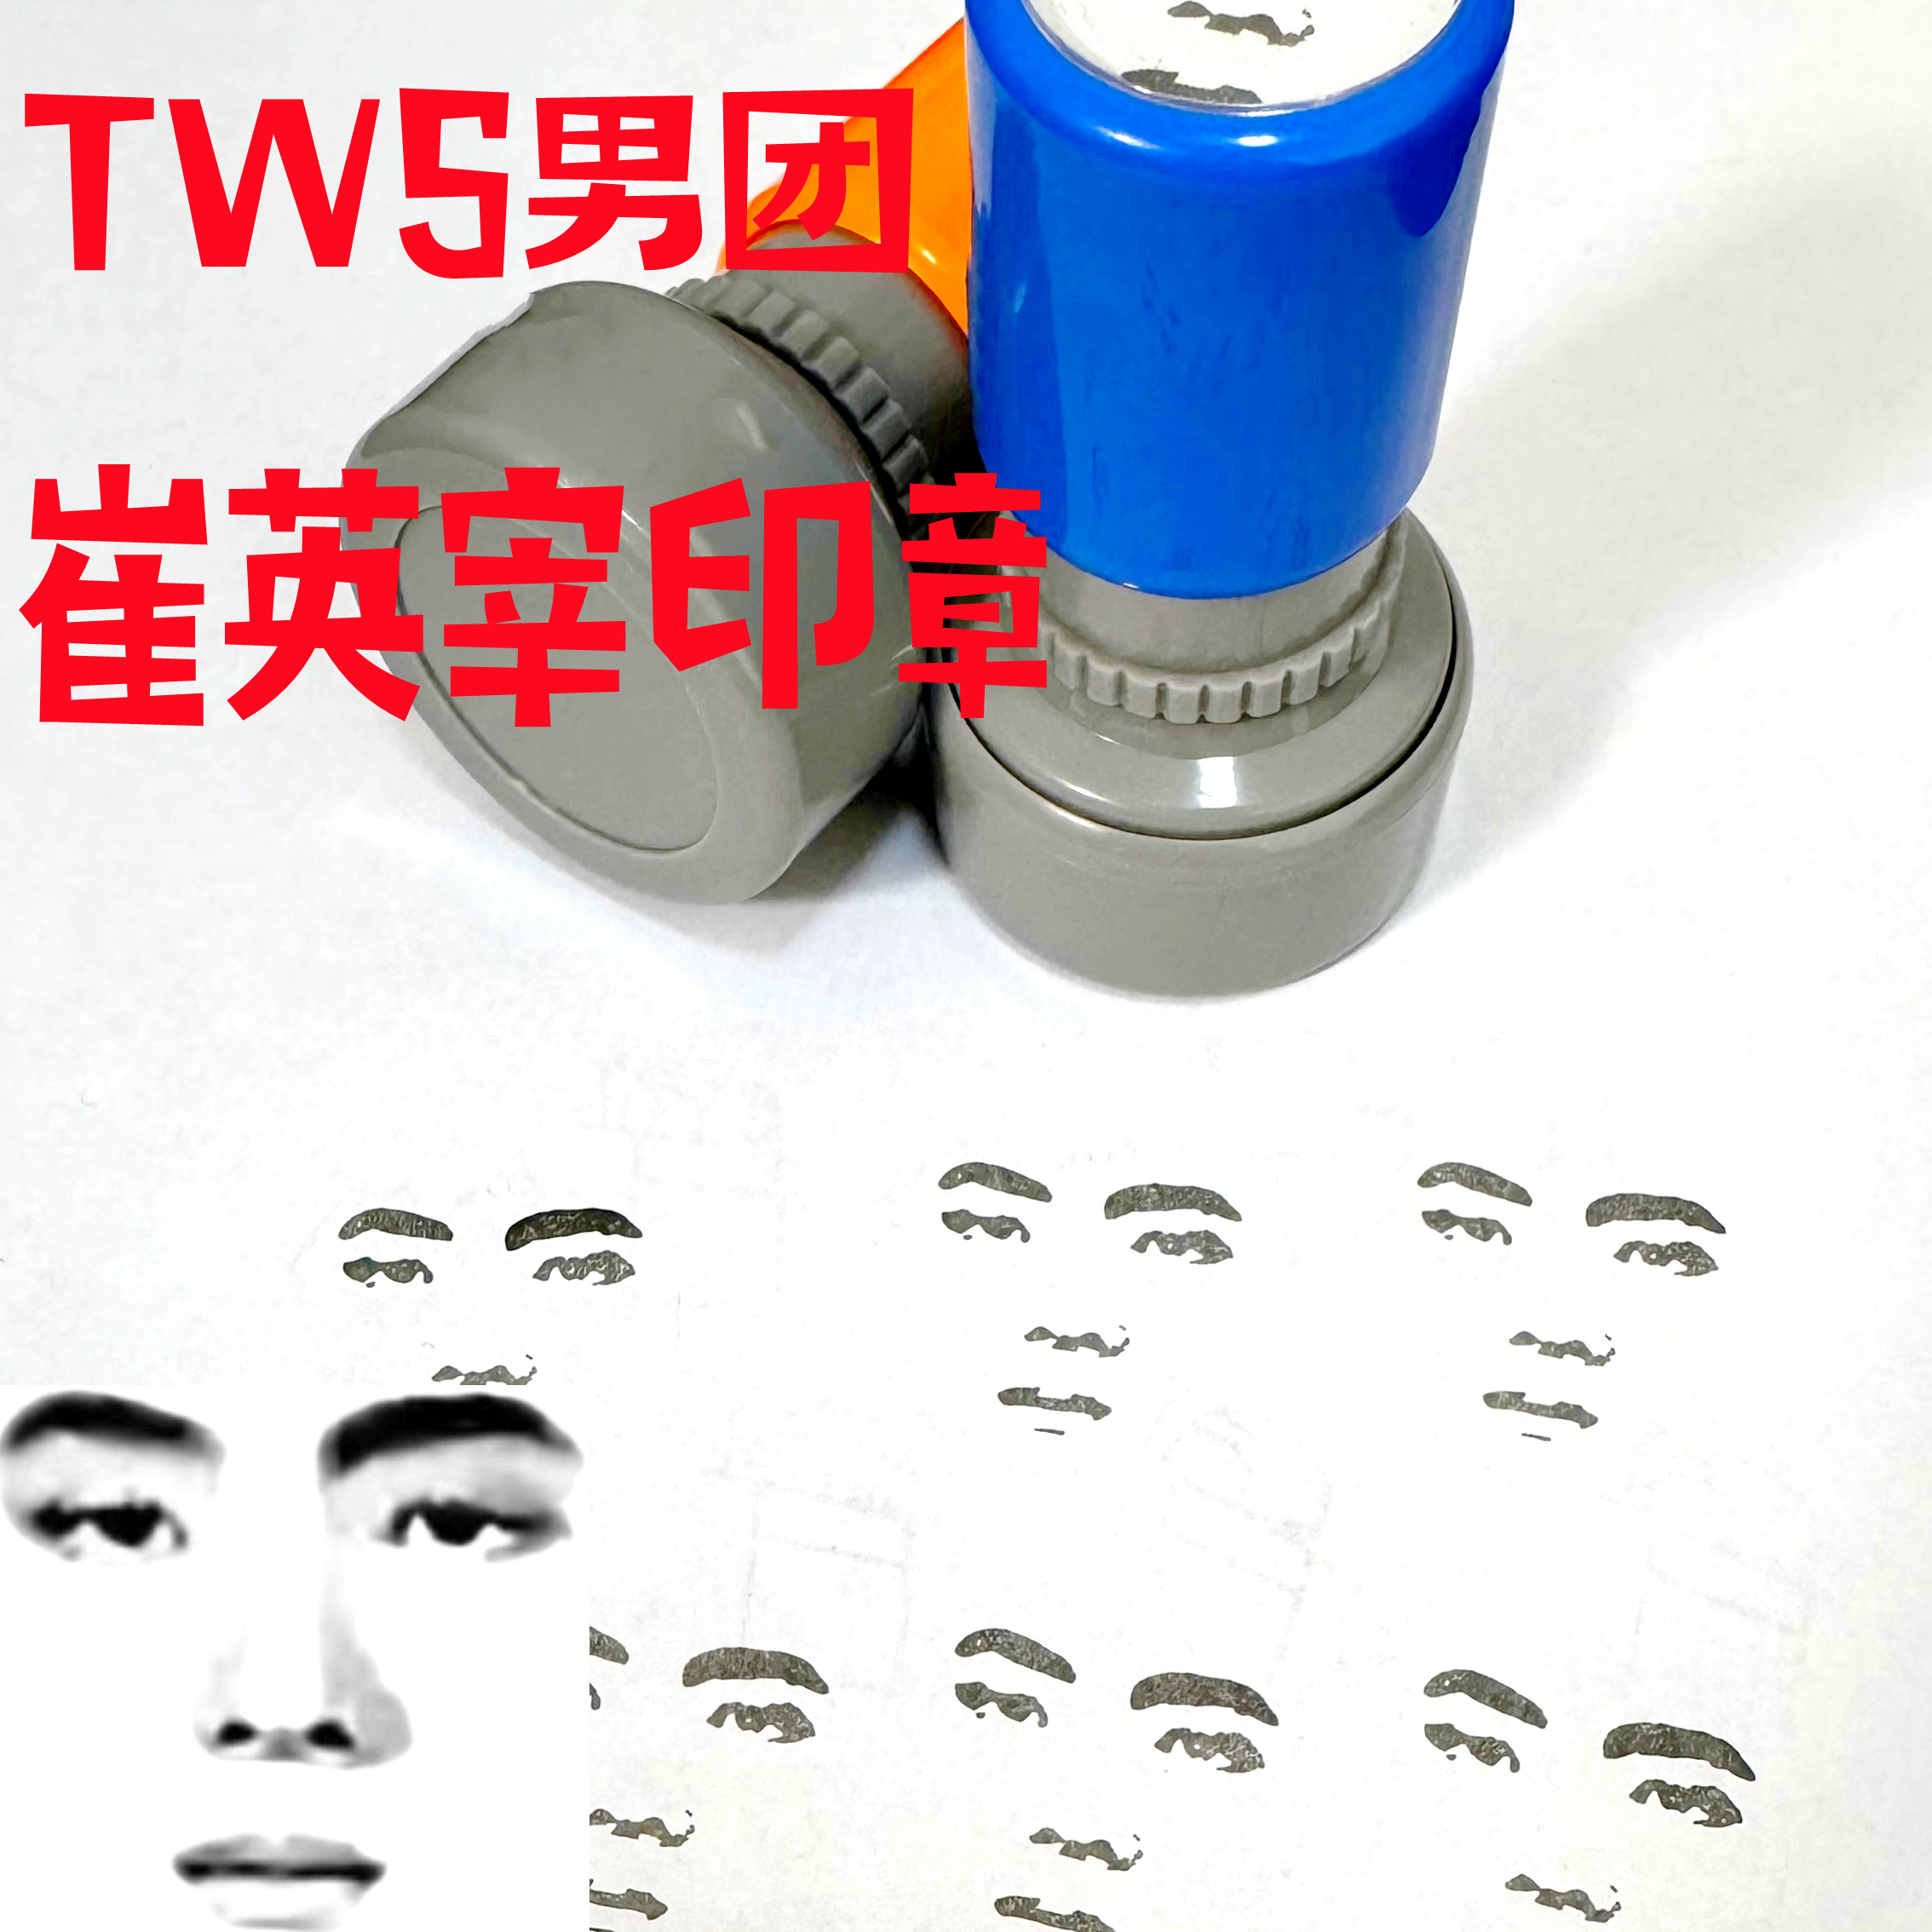 TWS男团崔英宰印章人脸章卡通自动出油送印油可定制